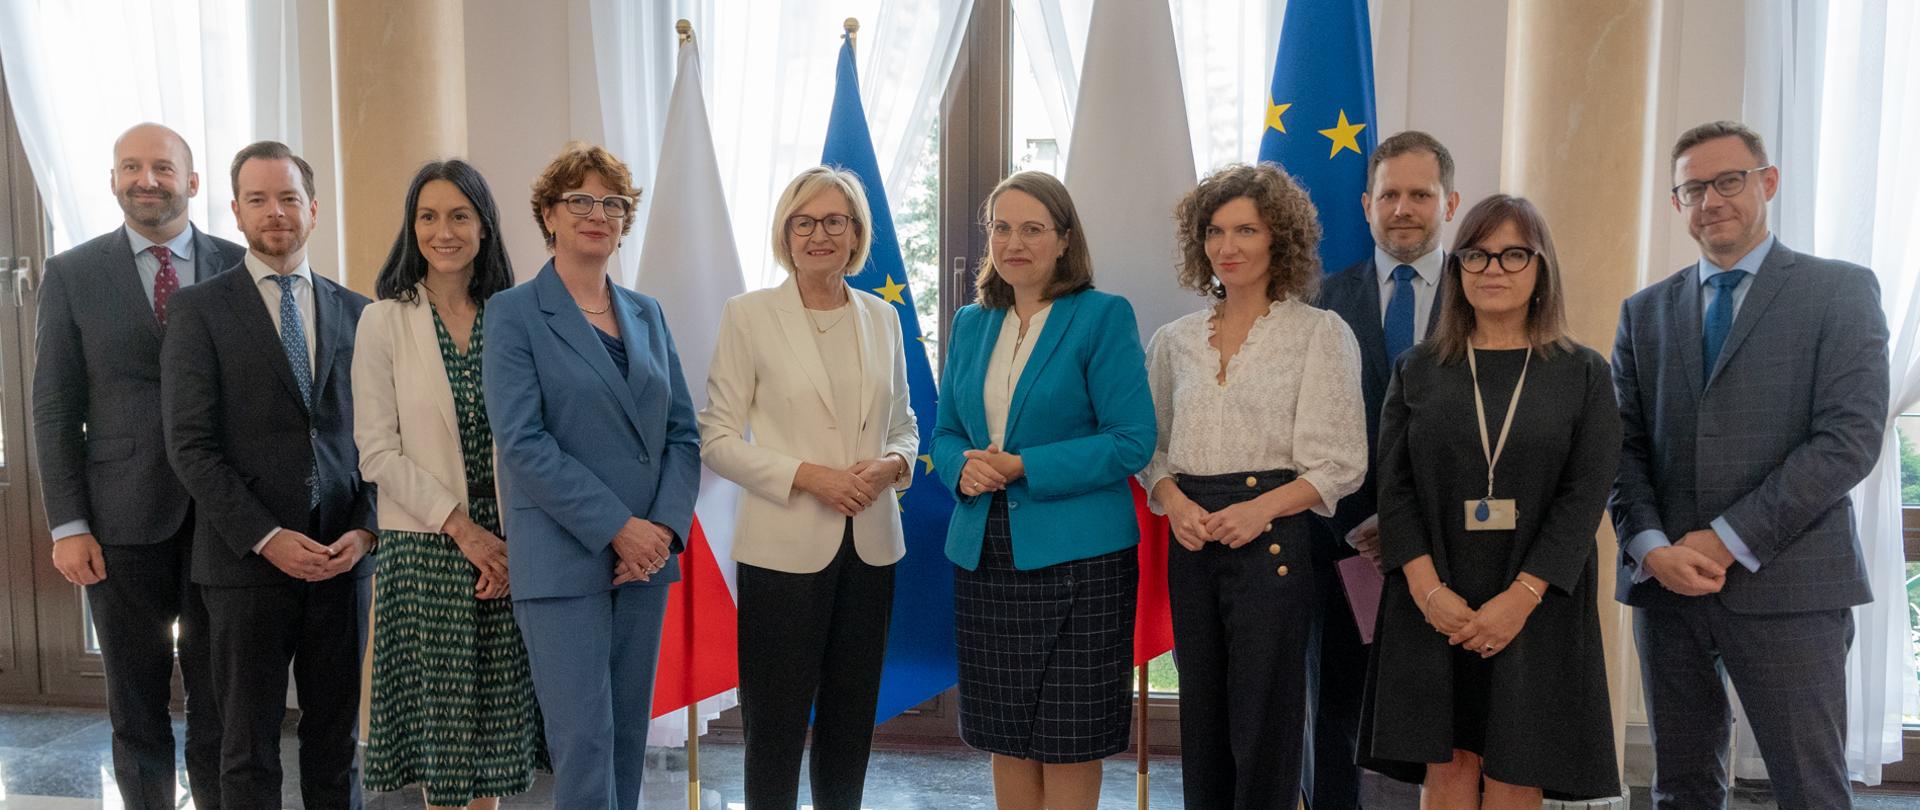 na zdjęciu minister finansów Magdalena Rzeczkowska, komisarz UE Mairead McGuinness i inni uczestnicy spotkania